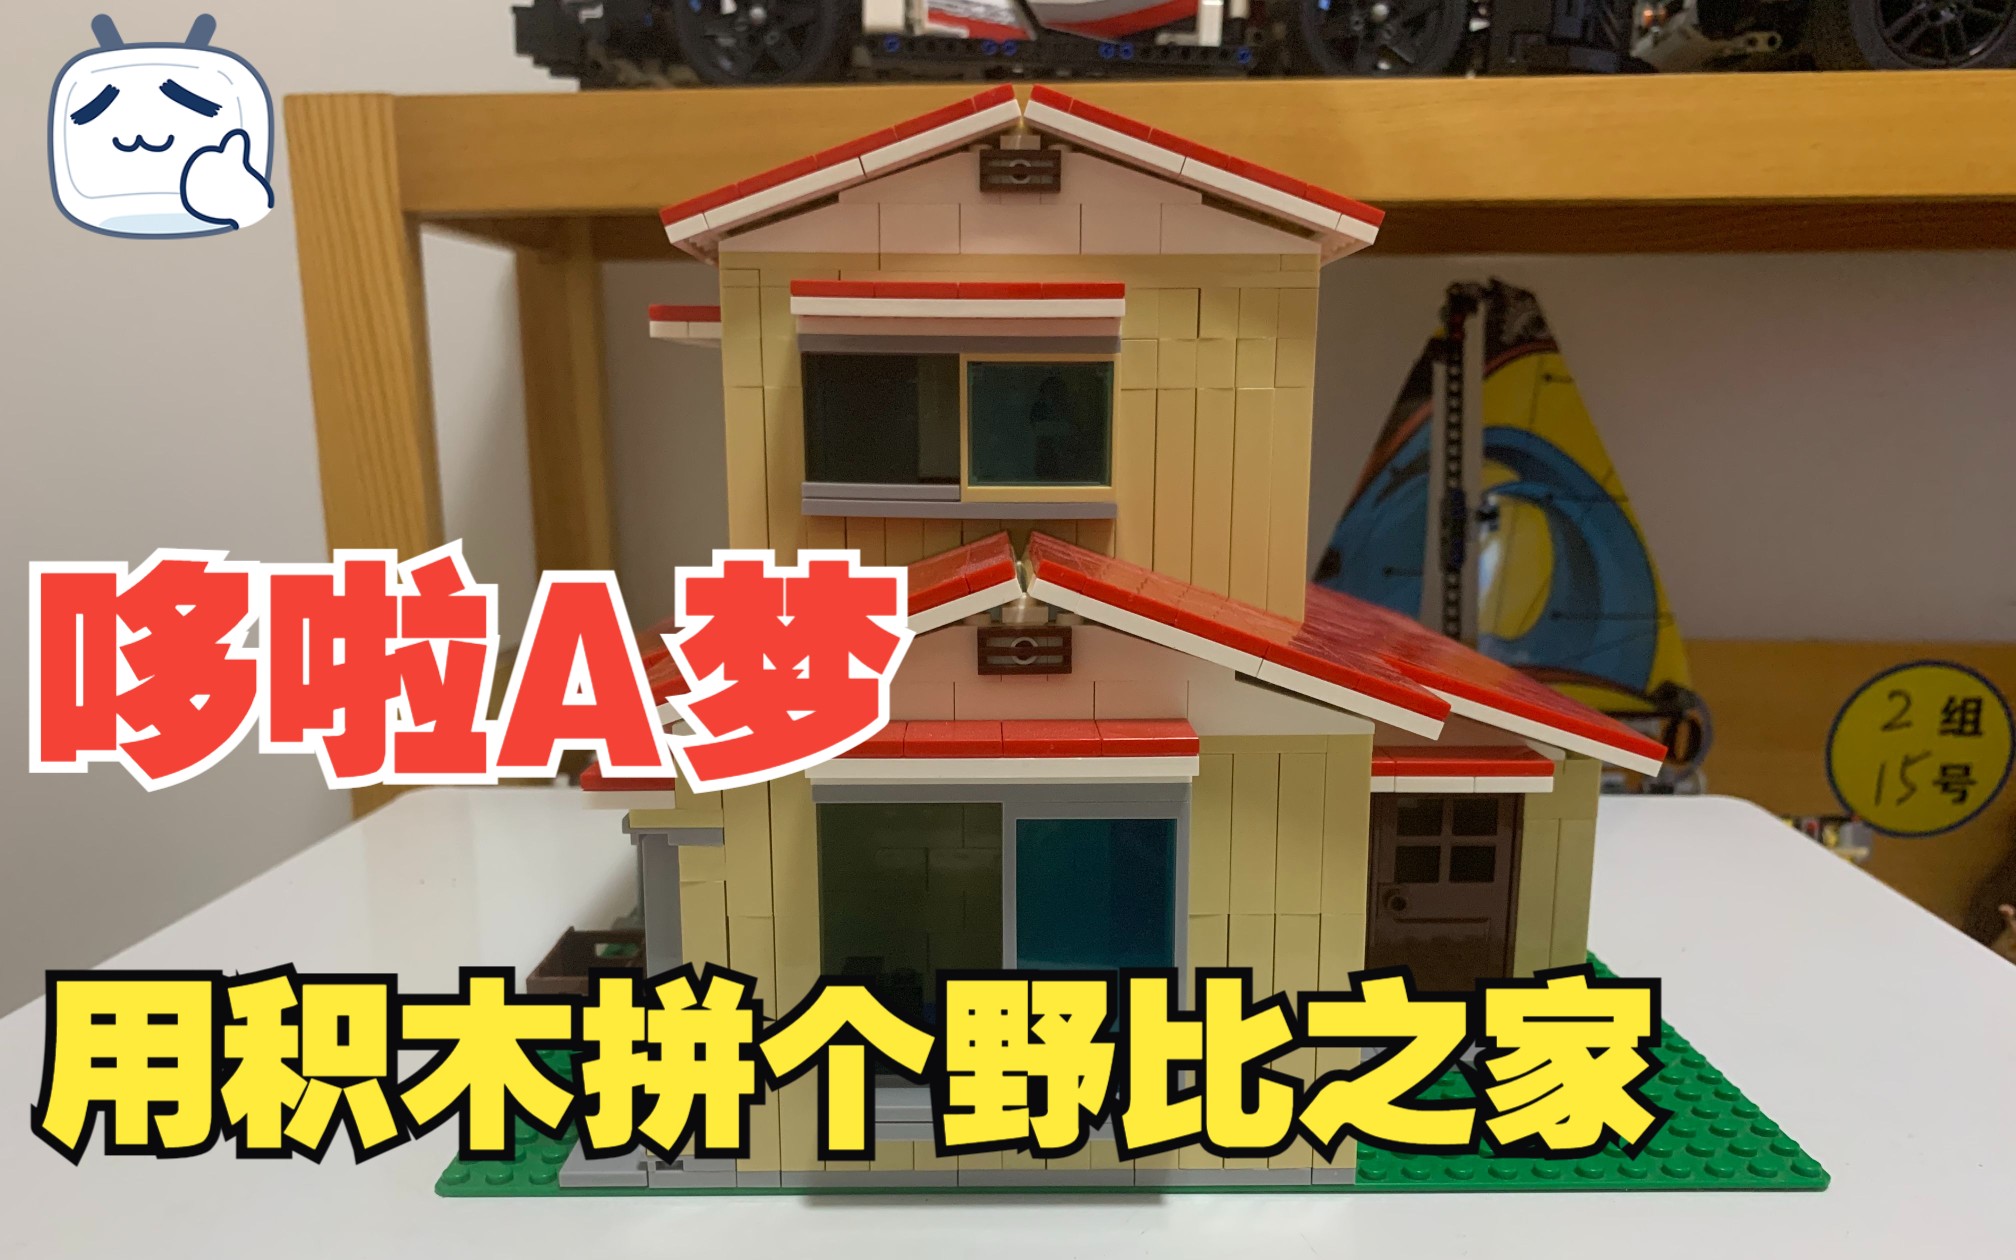 为了放下哆啦A梦的家，我把房子推倒重建了！